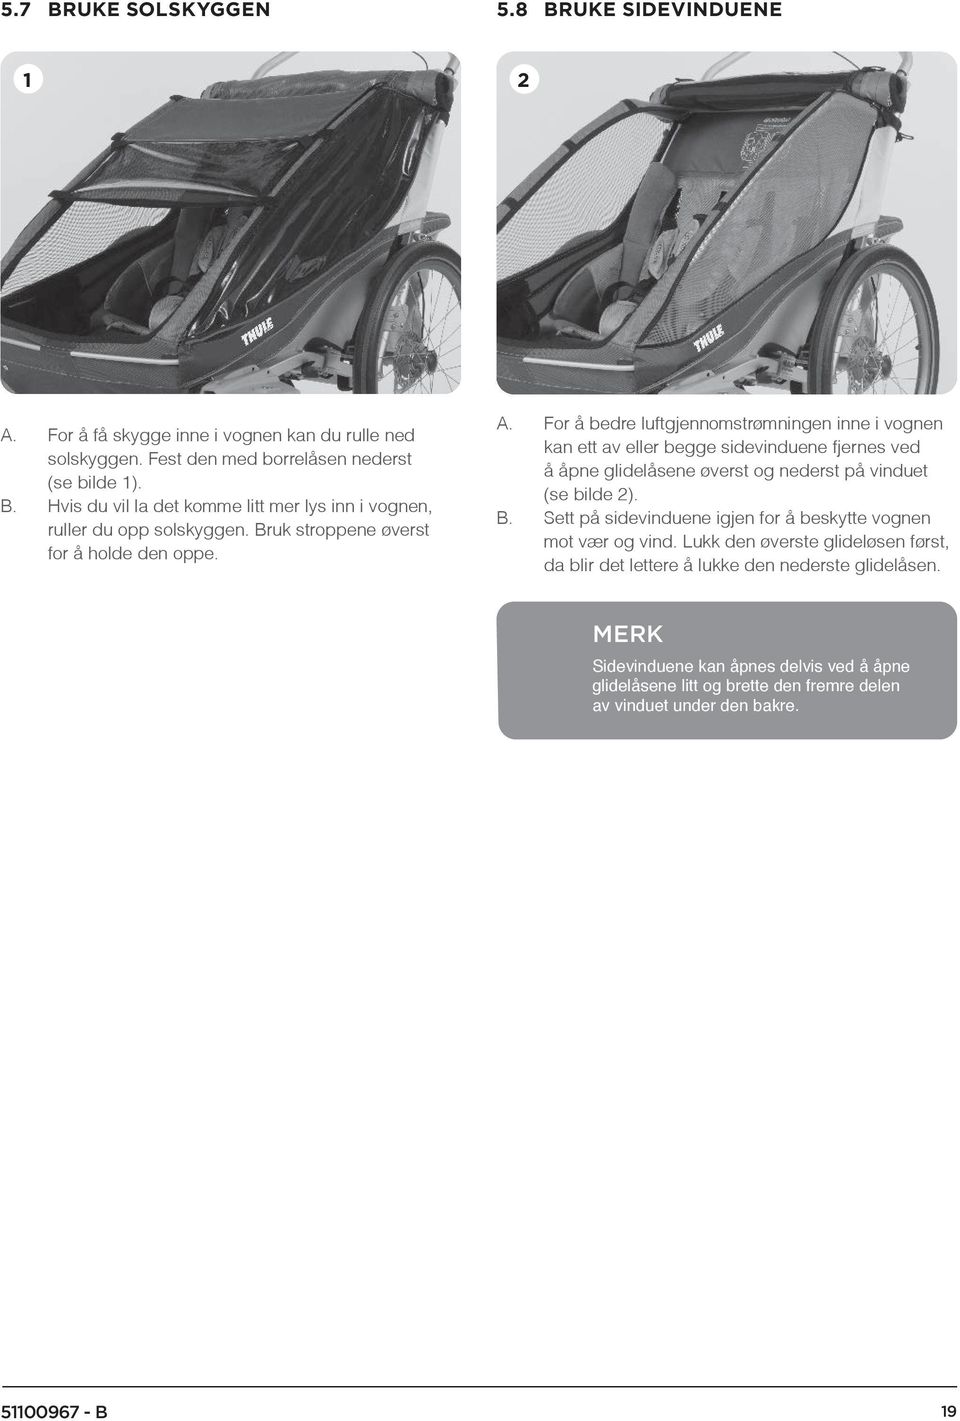 For å bedre luftgjennomstrømningen inne i vognen kan ett av eller begge sidevinduene fjernes ved å åpne glidelåsene øverst og nederst på vinduet (se bilde 2). B.